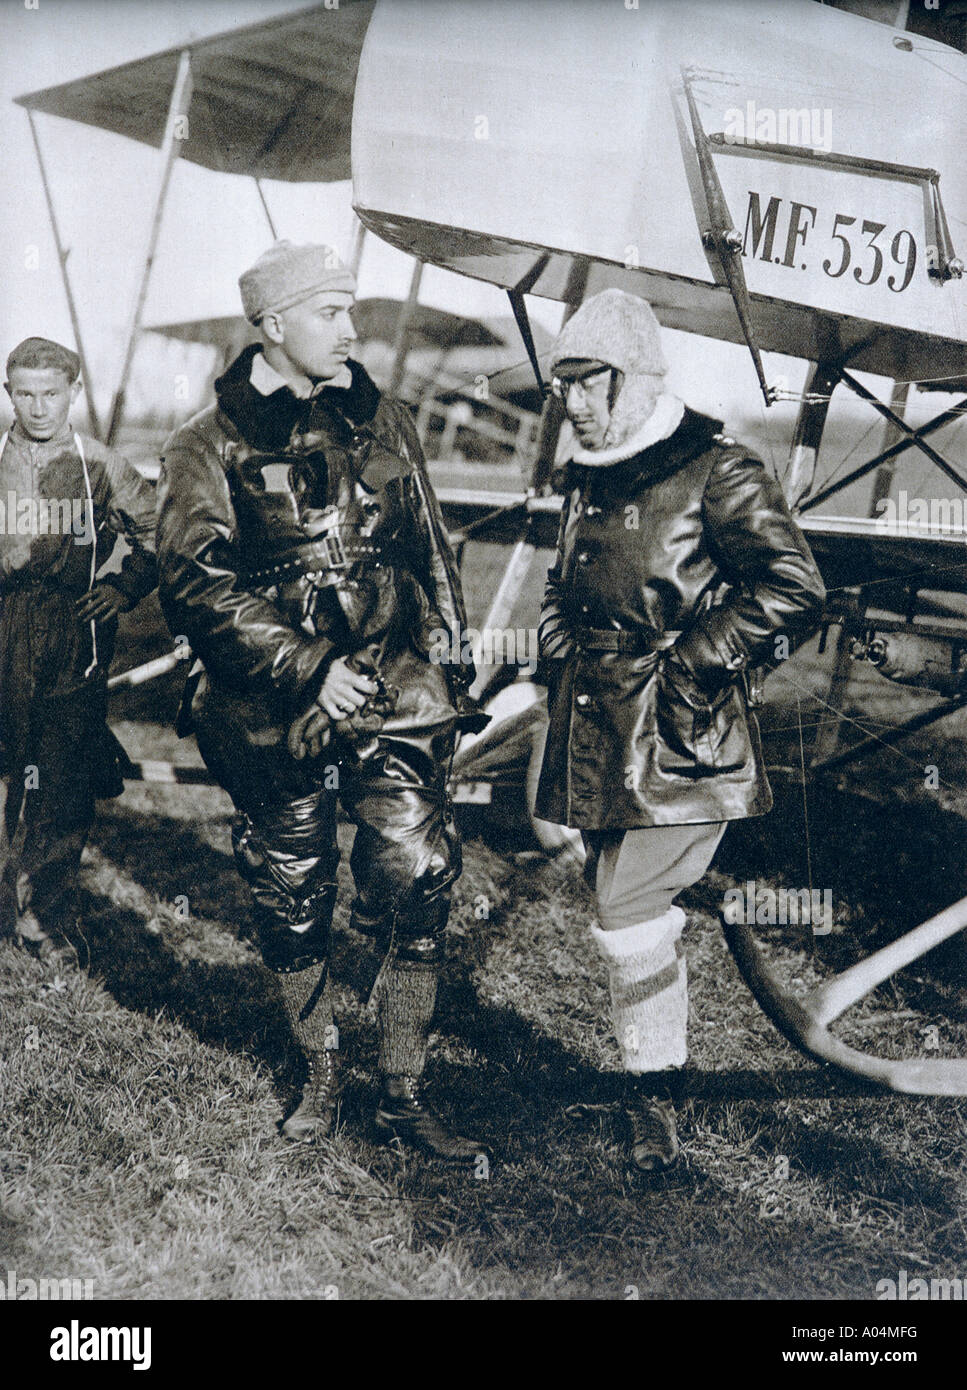 Poeta, scrittore, aviatore, Gabriele D'Annunzio, 1863-1938, visto qui a destra, durante il suo servizio con l'Aeronautica militare Italiana. Foto Stock